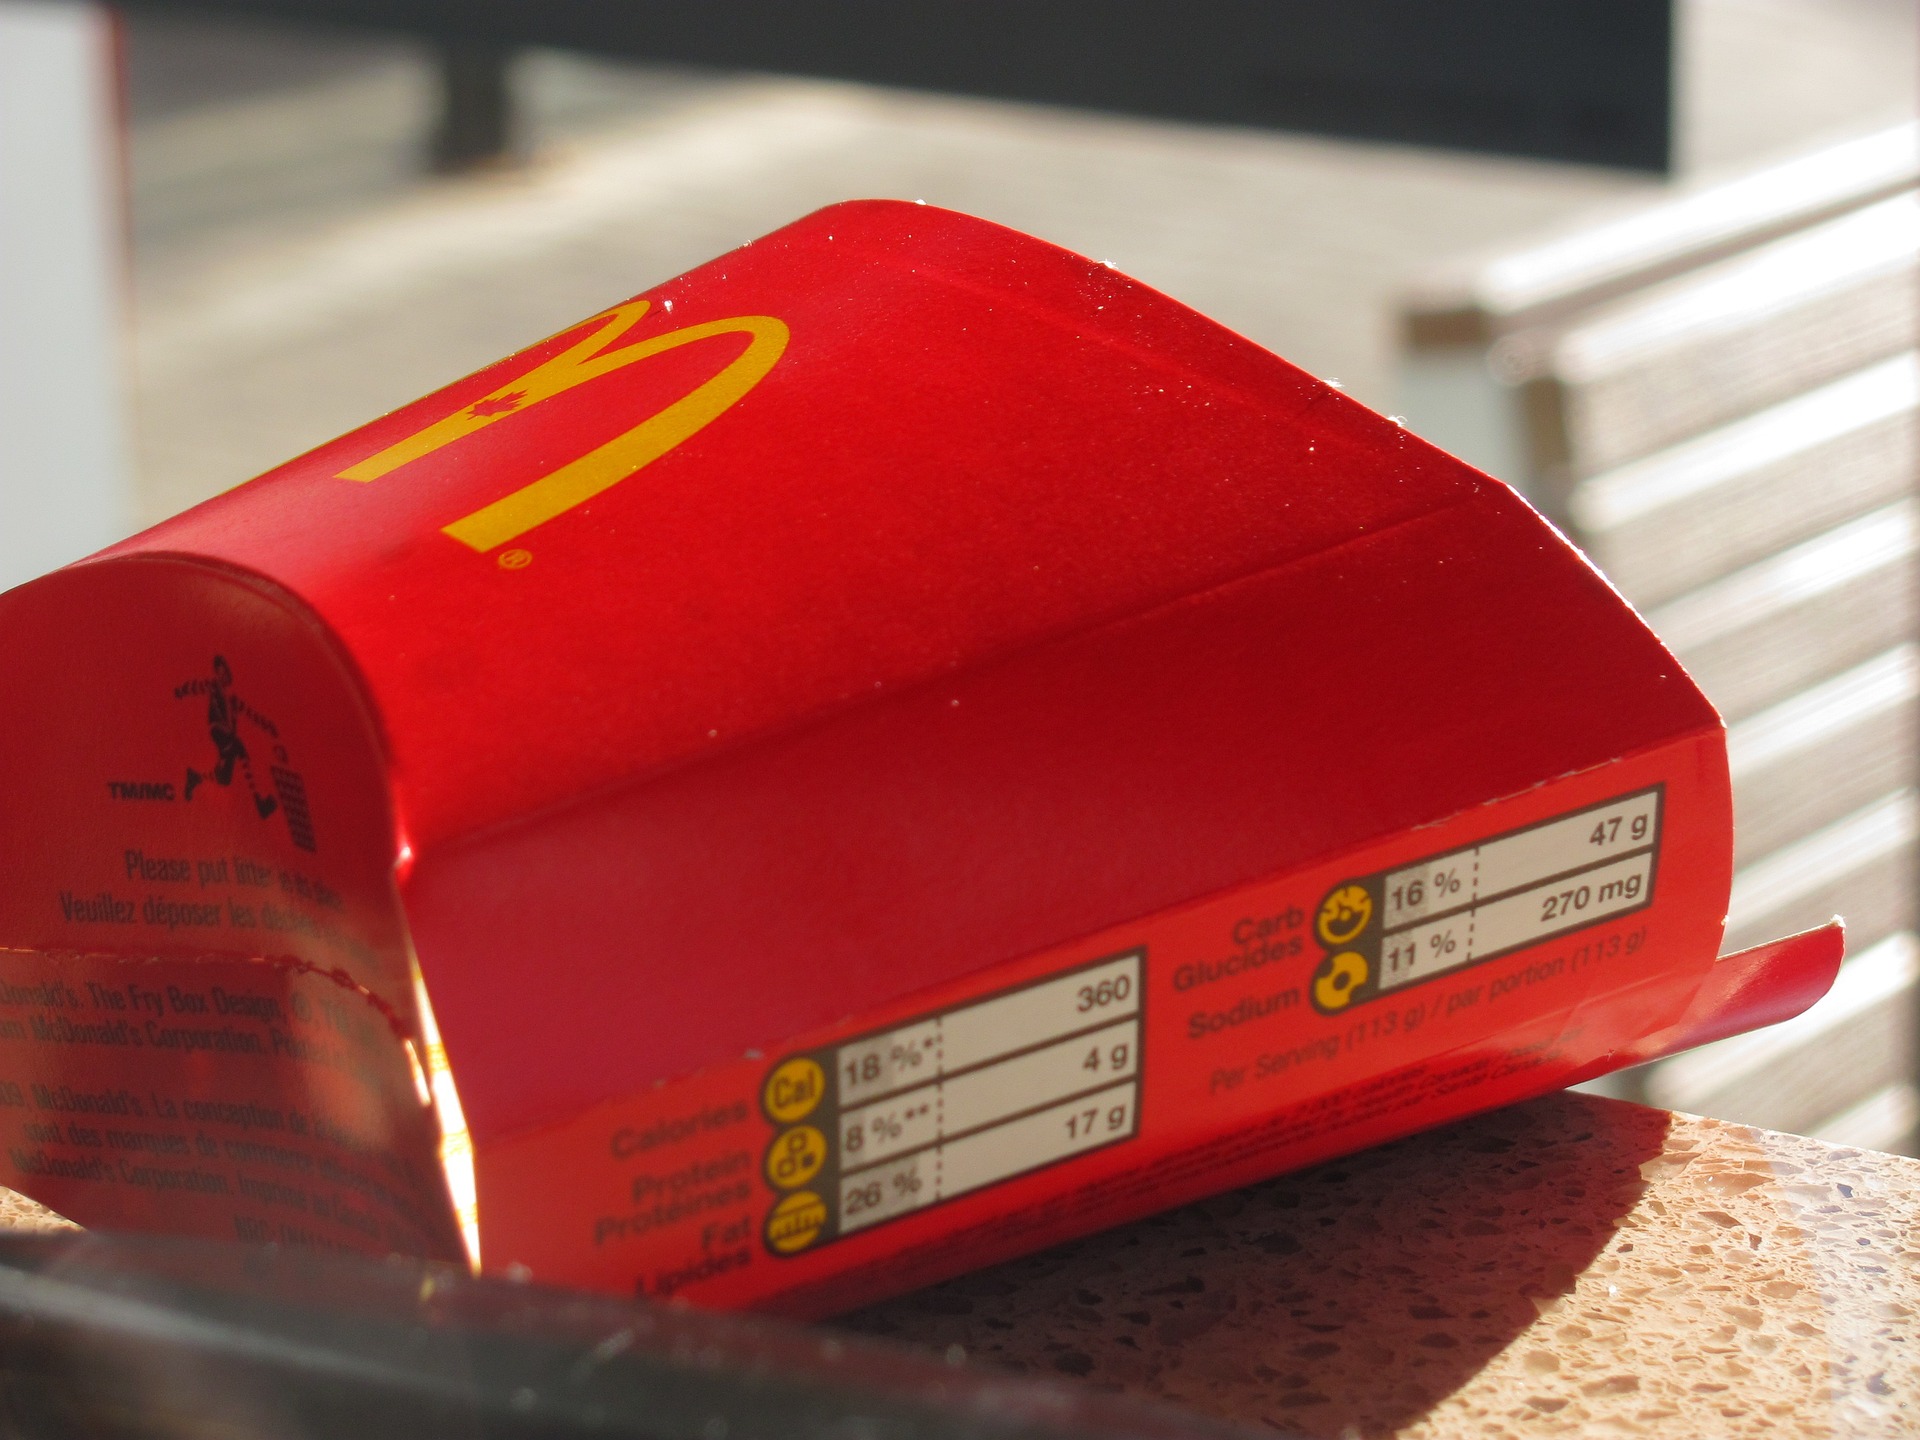 Kiderült, mennyit drágult a McDonald's az elmúlt tíz évben, az emberek felháborodtak